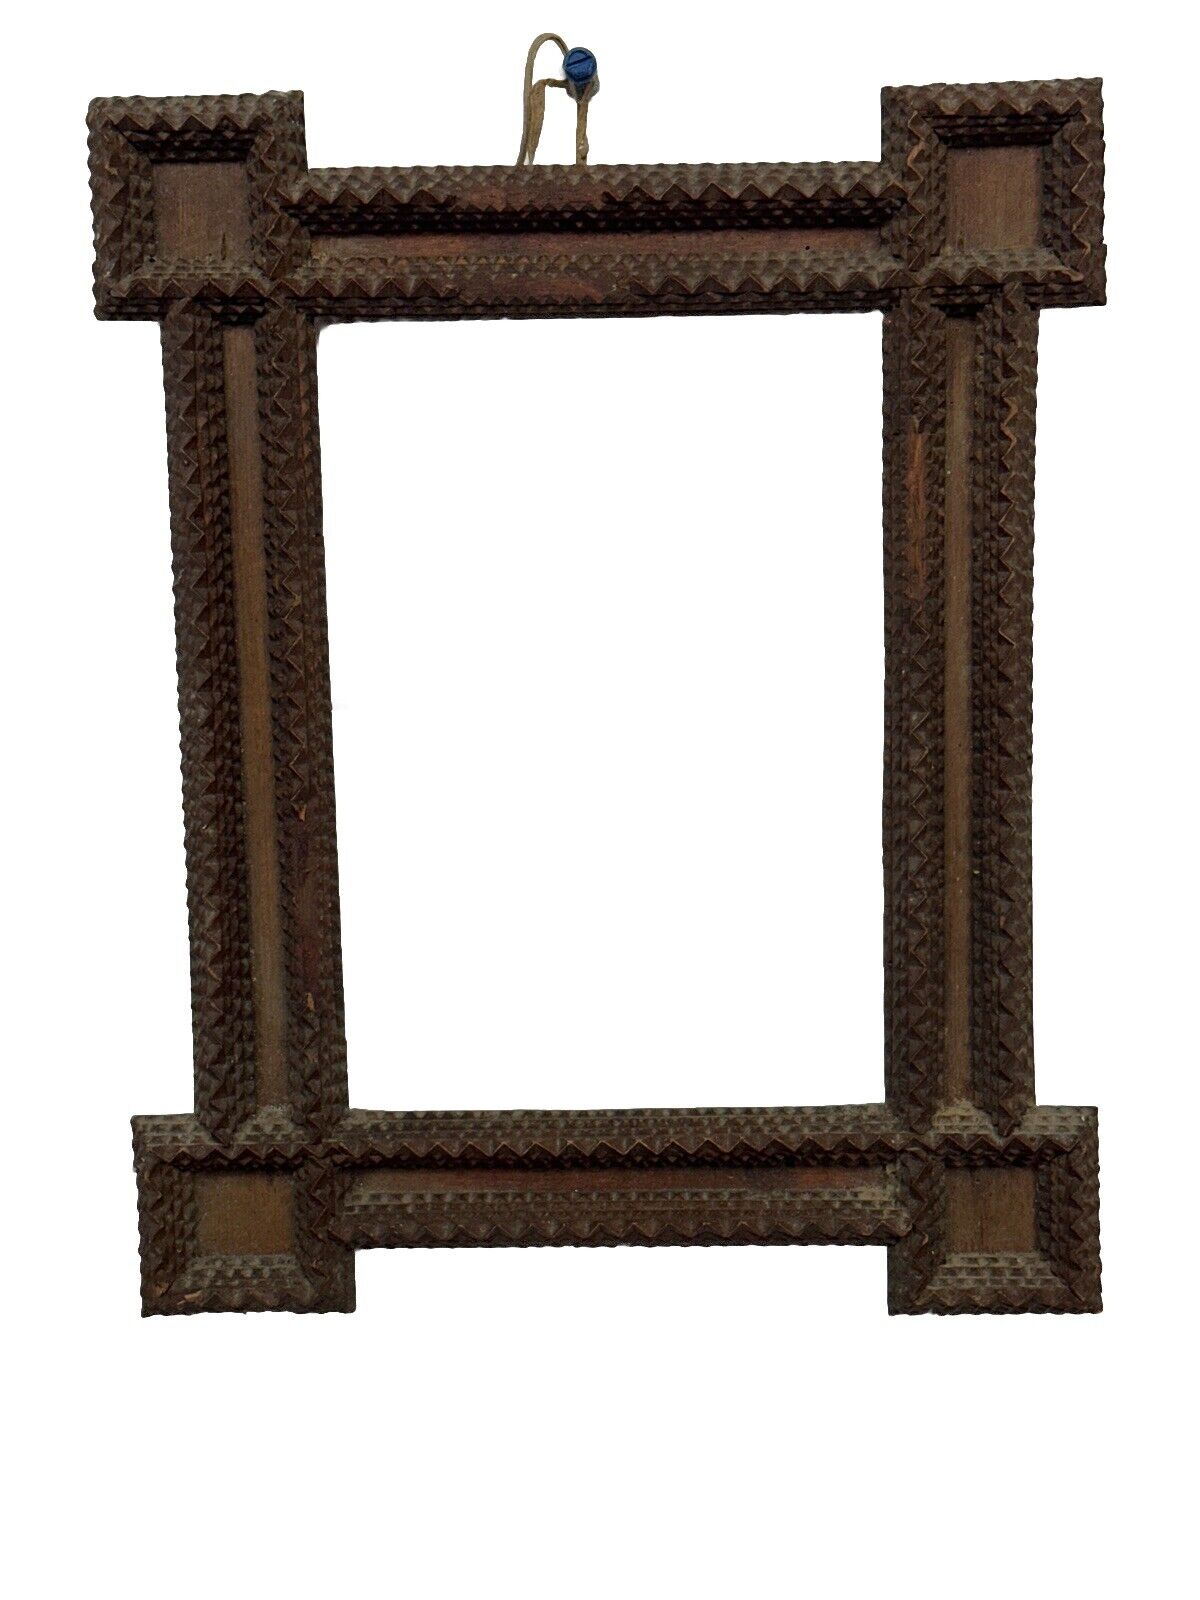 ANTIQUE Tramp Art Frame Victorian 1800s Chip Carved Original 